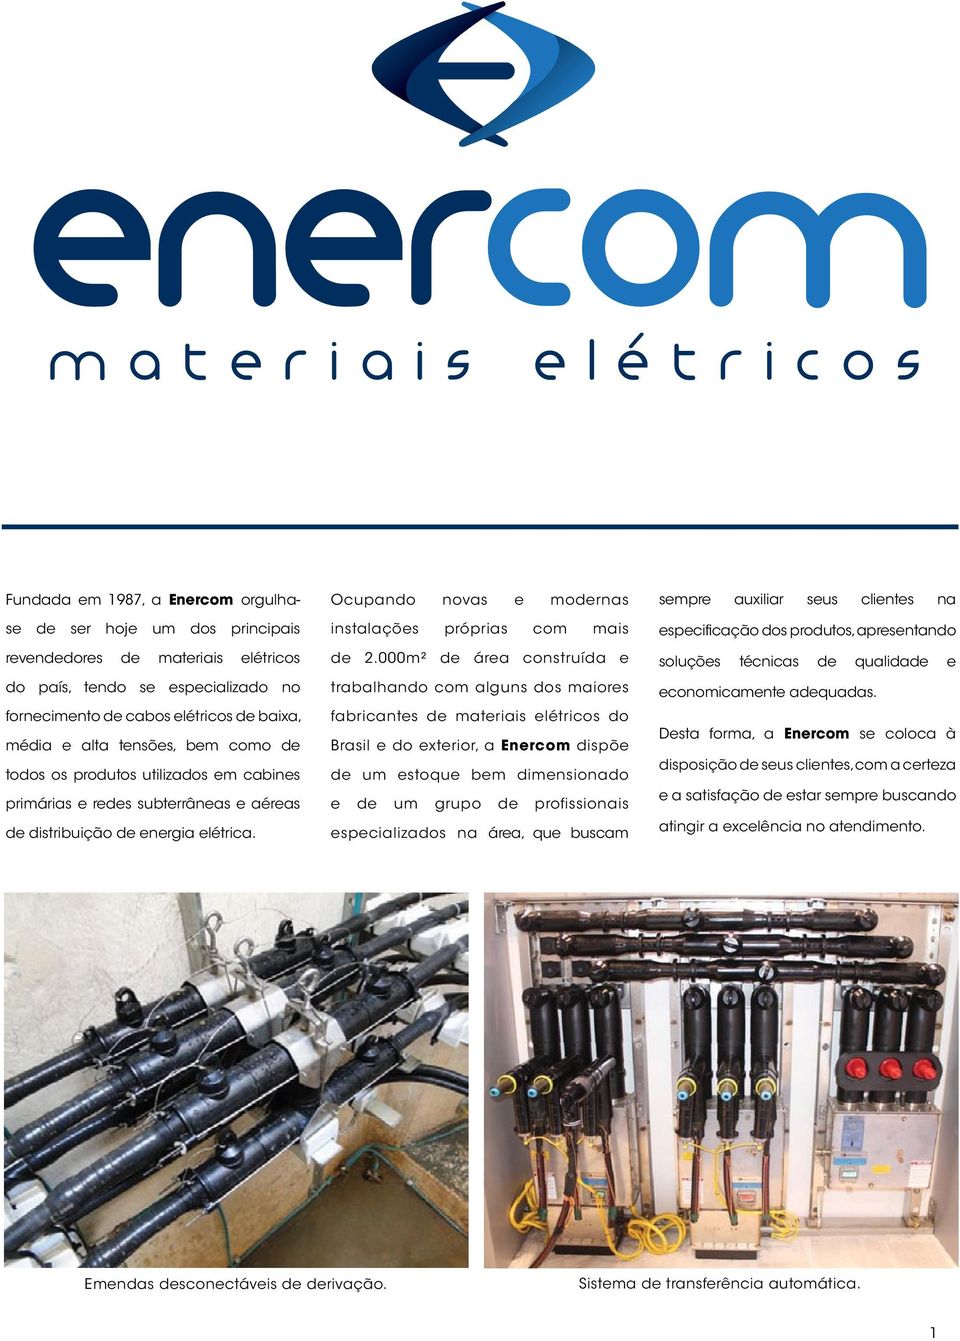 000m² de área construída e trabalhando com alguns dos maiores fabricantes de materiais elétricos do Brasil e do exterior, a Enercom dispõe de um estoque bem dimensionado e de um grupo de